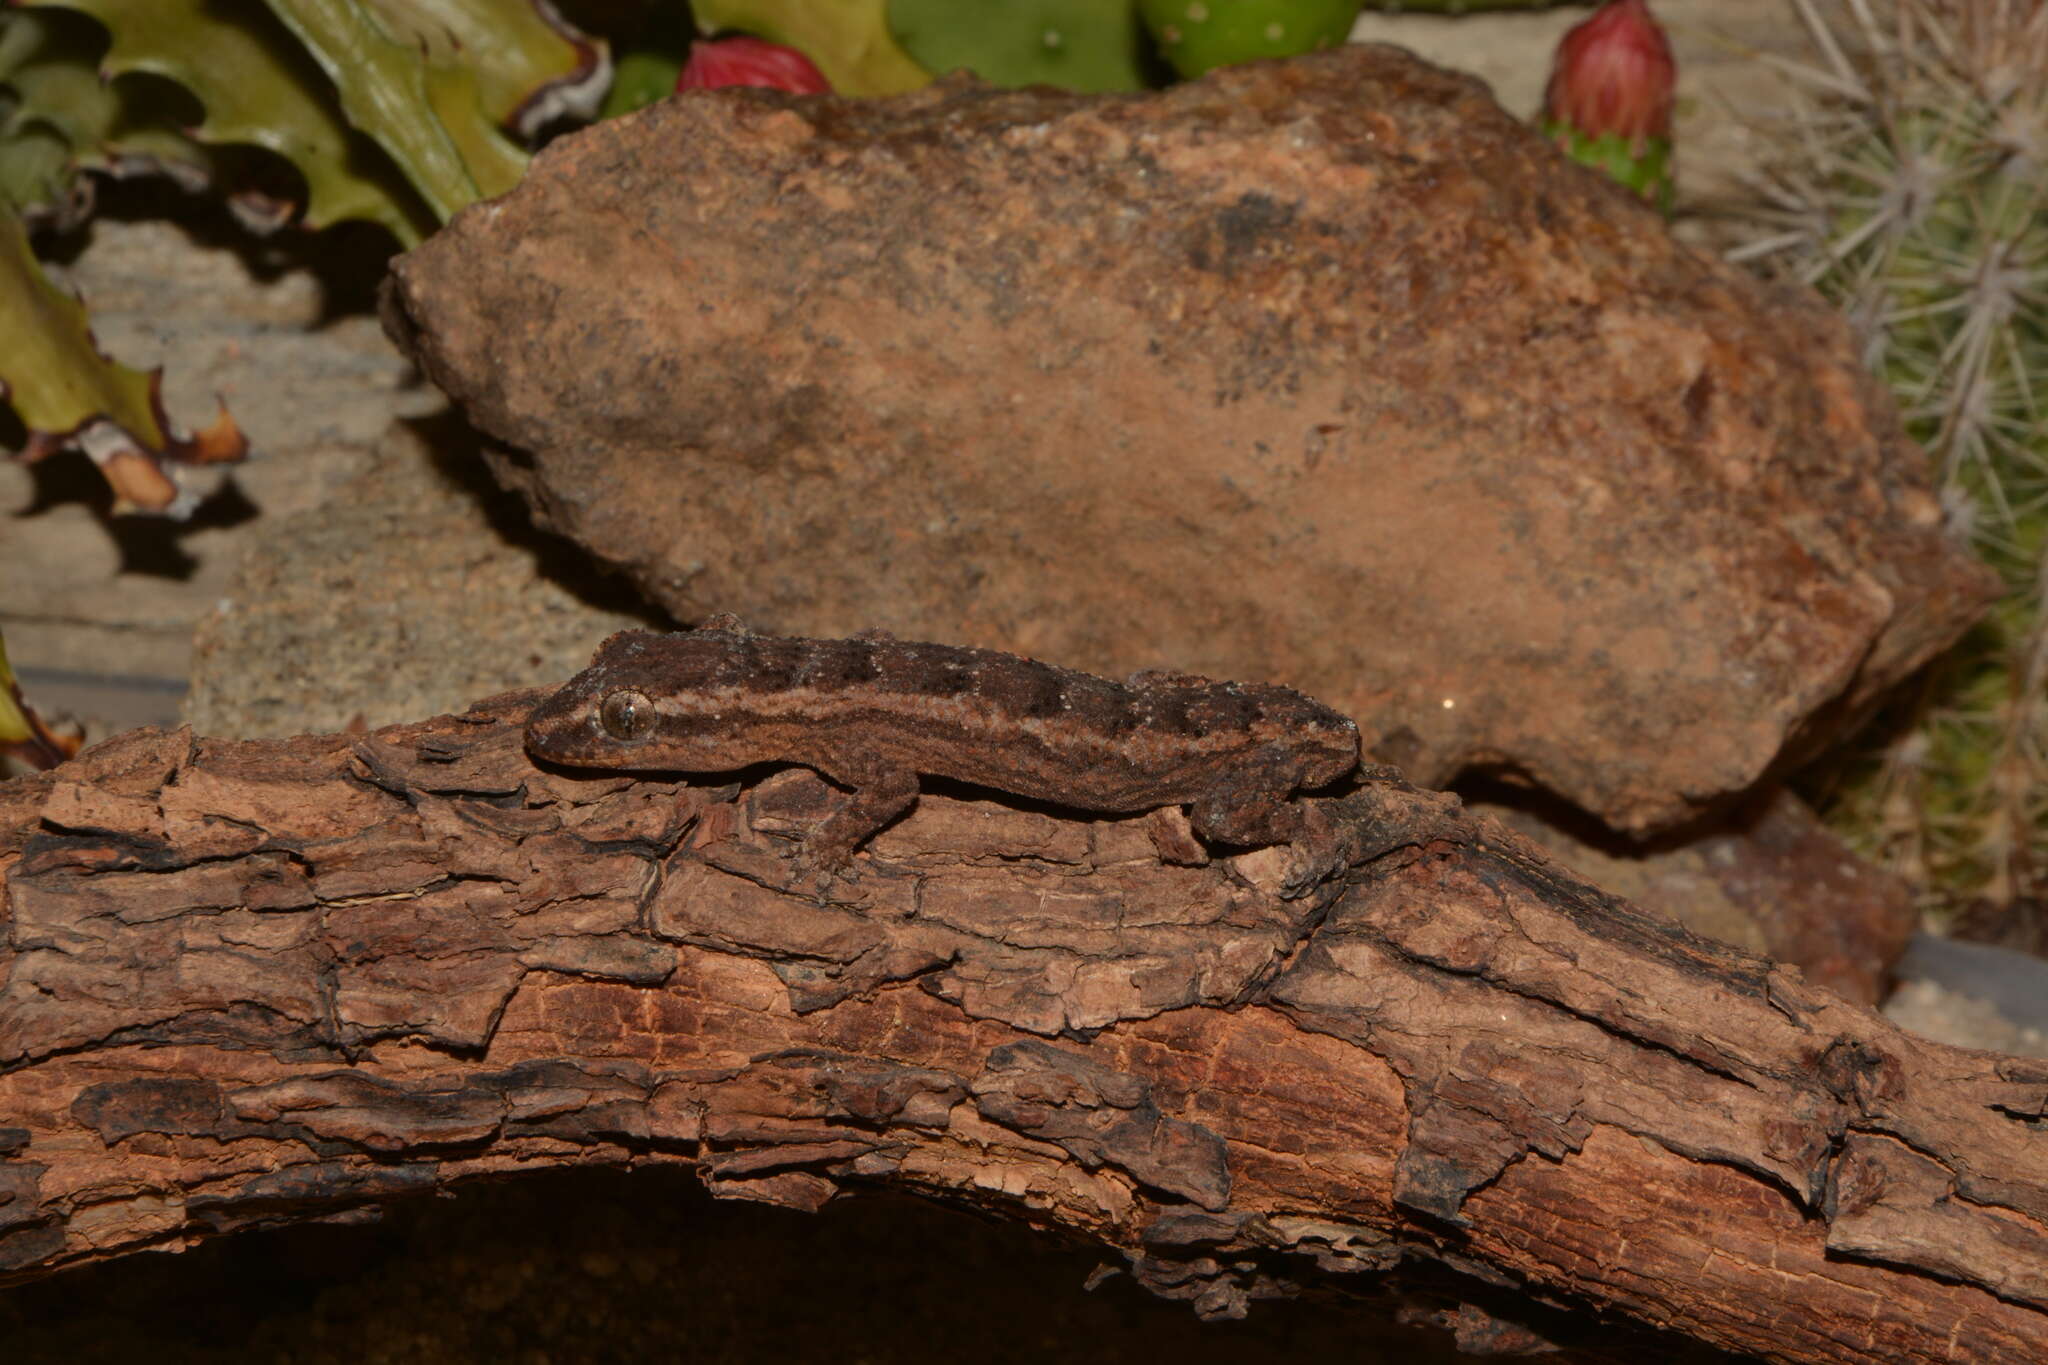 Image of Amaral's Brazilian Gecko